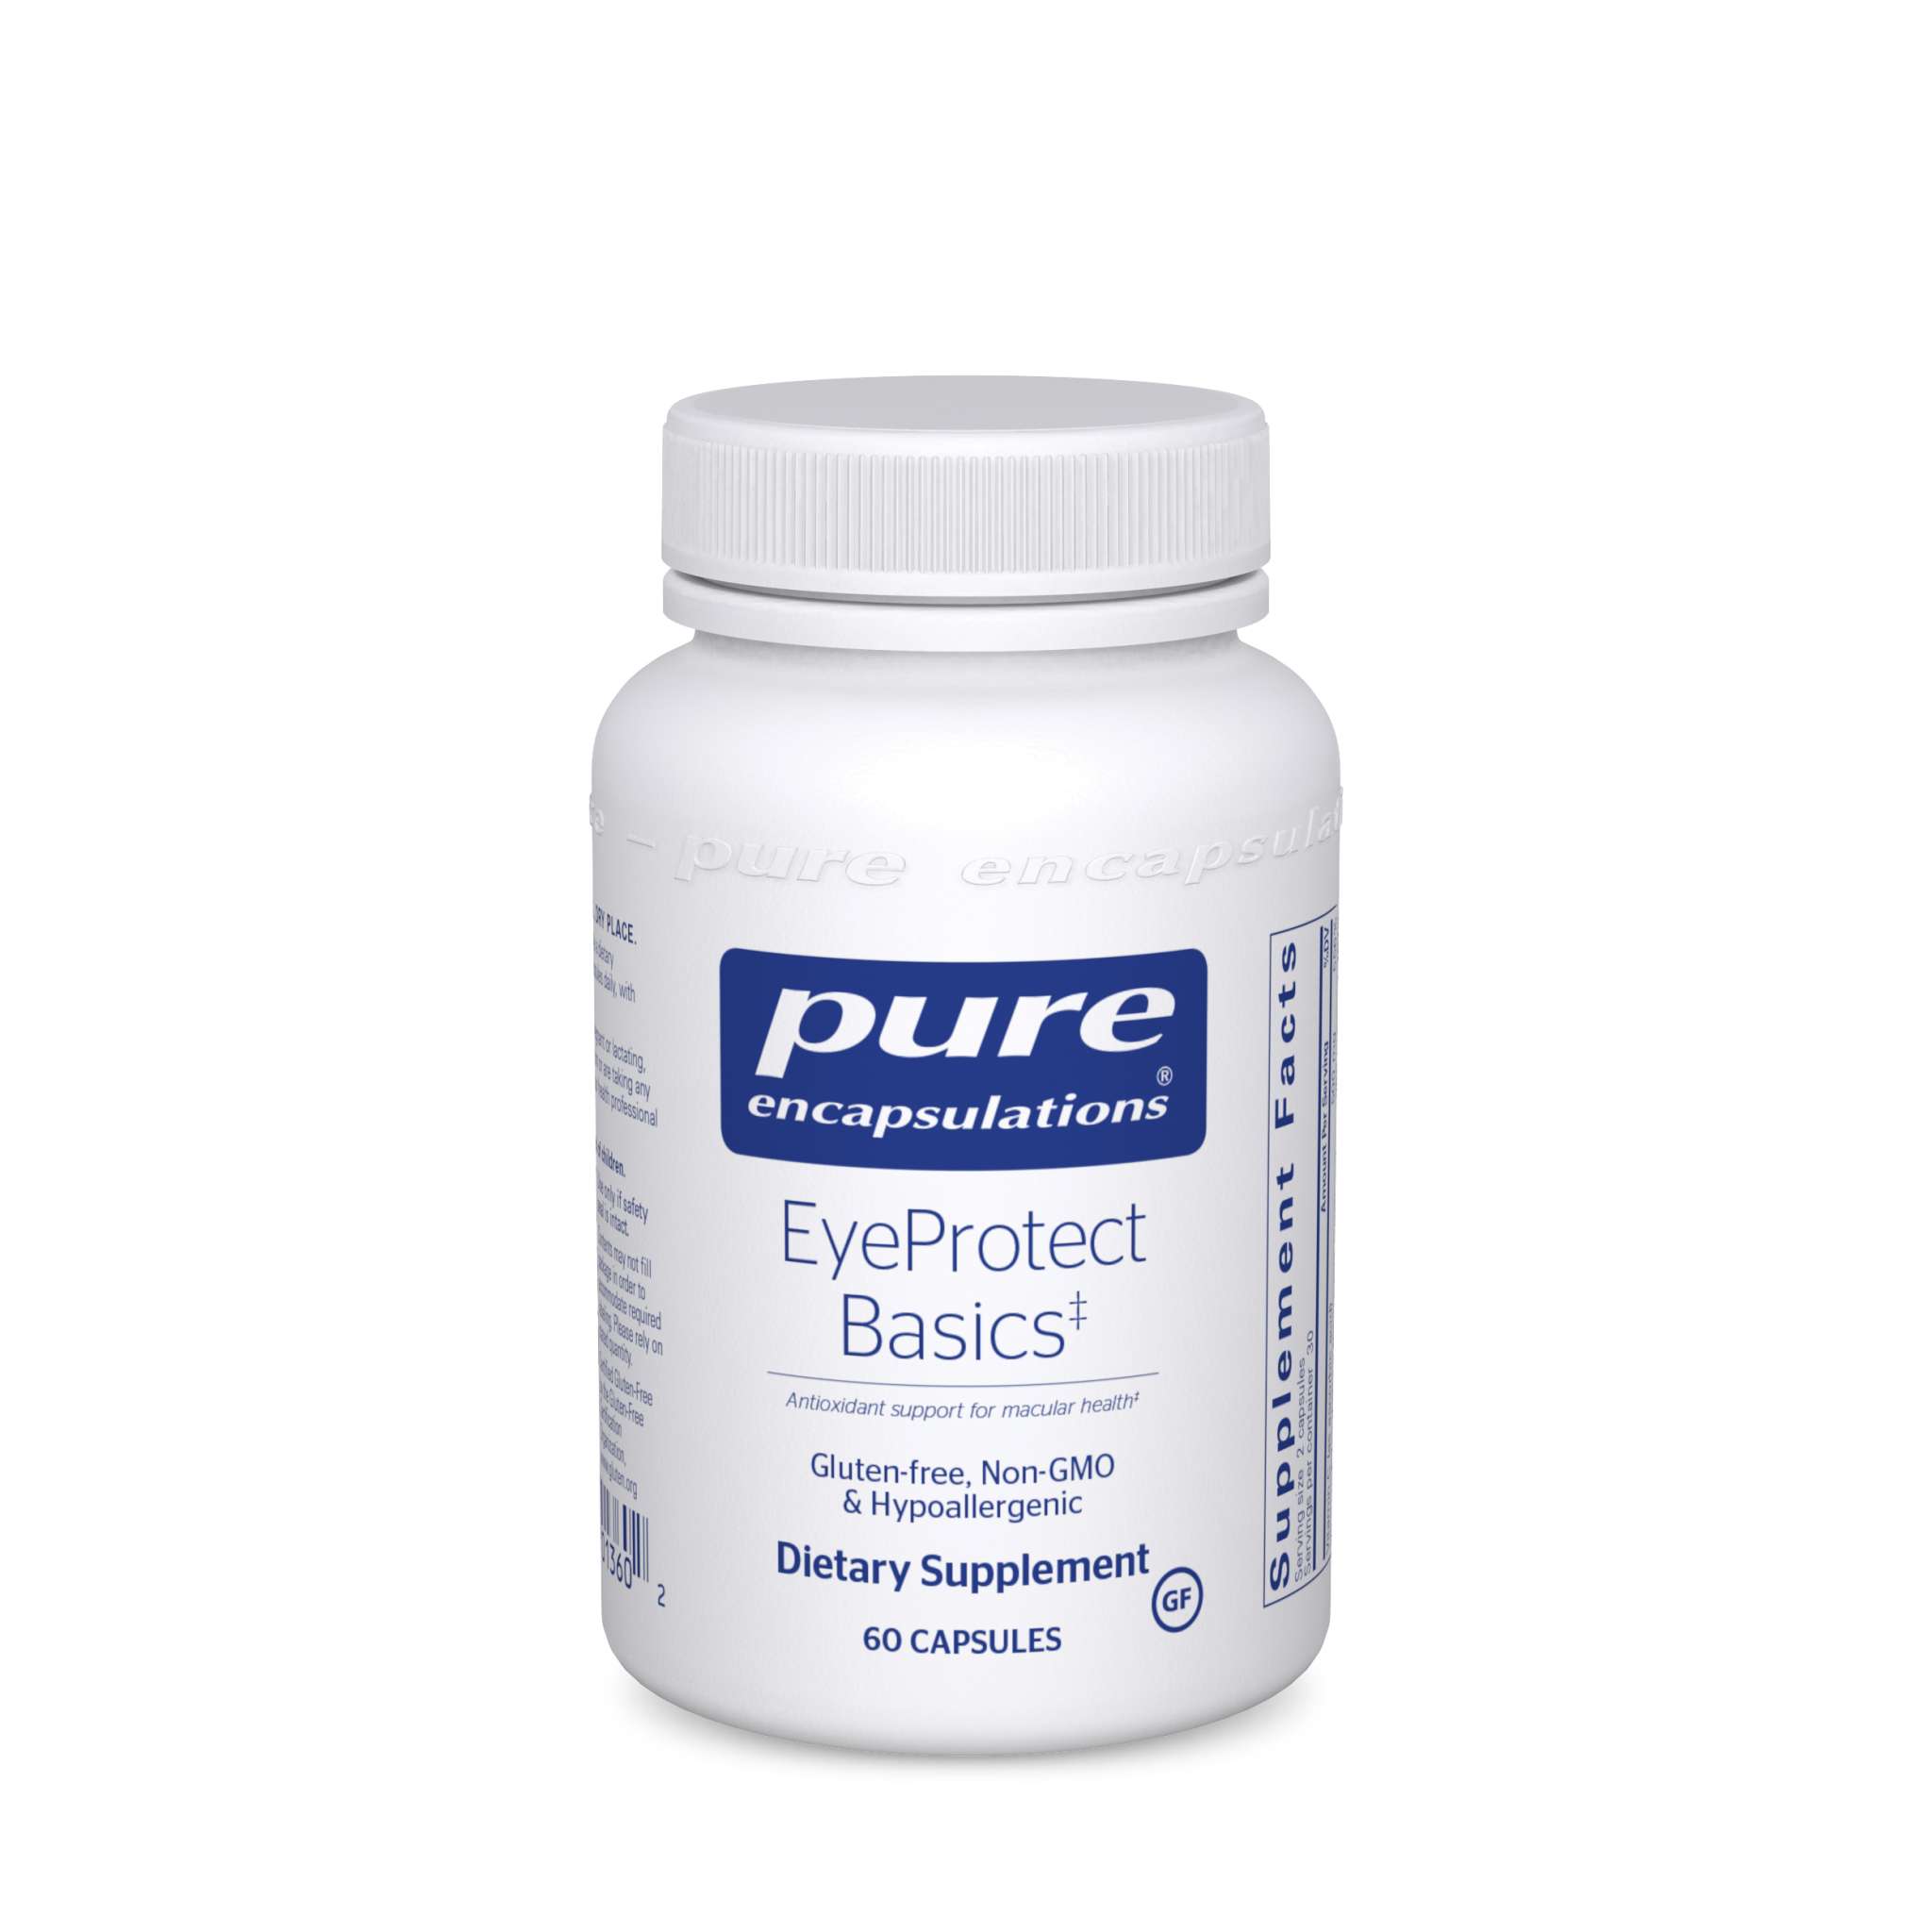 Pure Encapsulations - Eyeprotect Basics